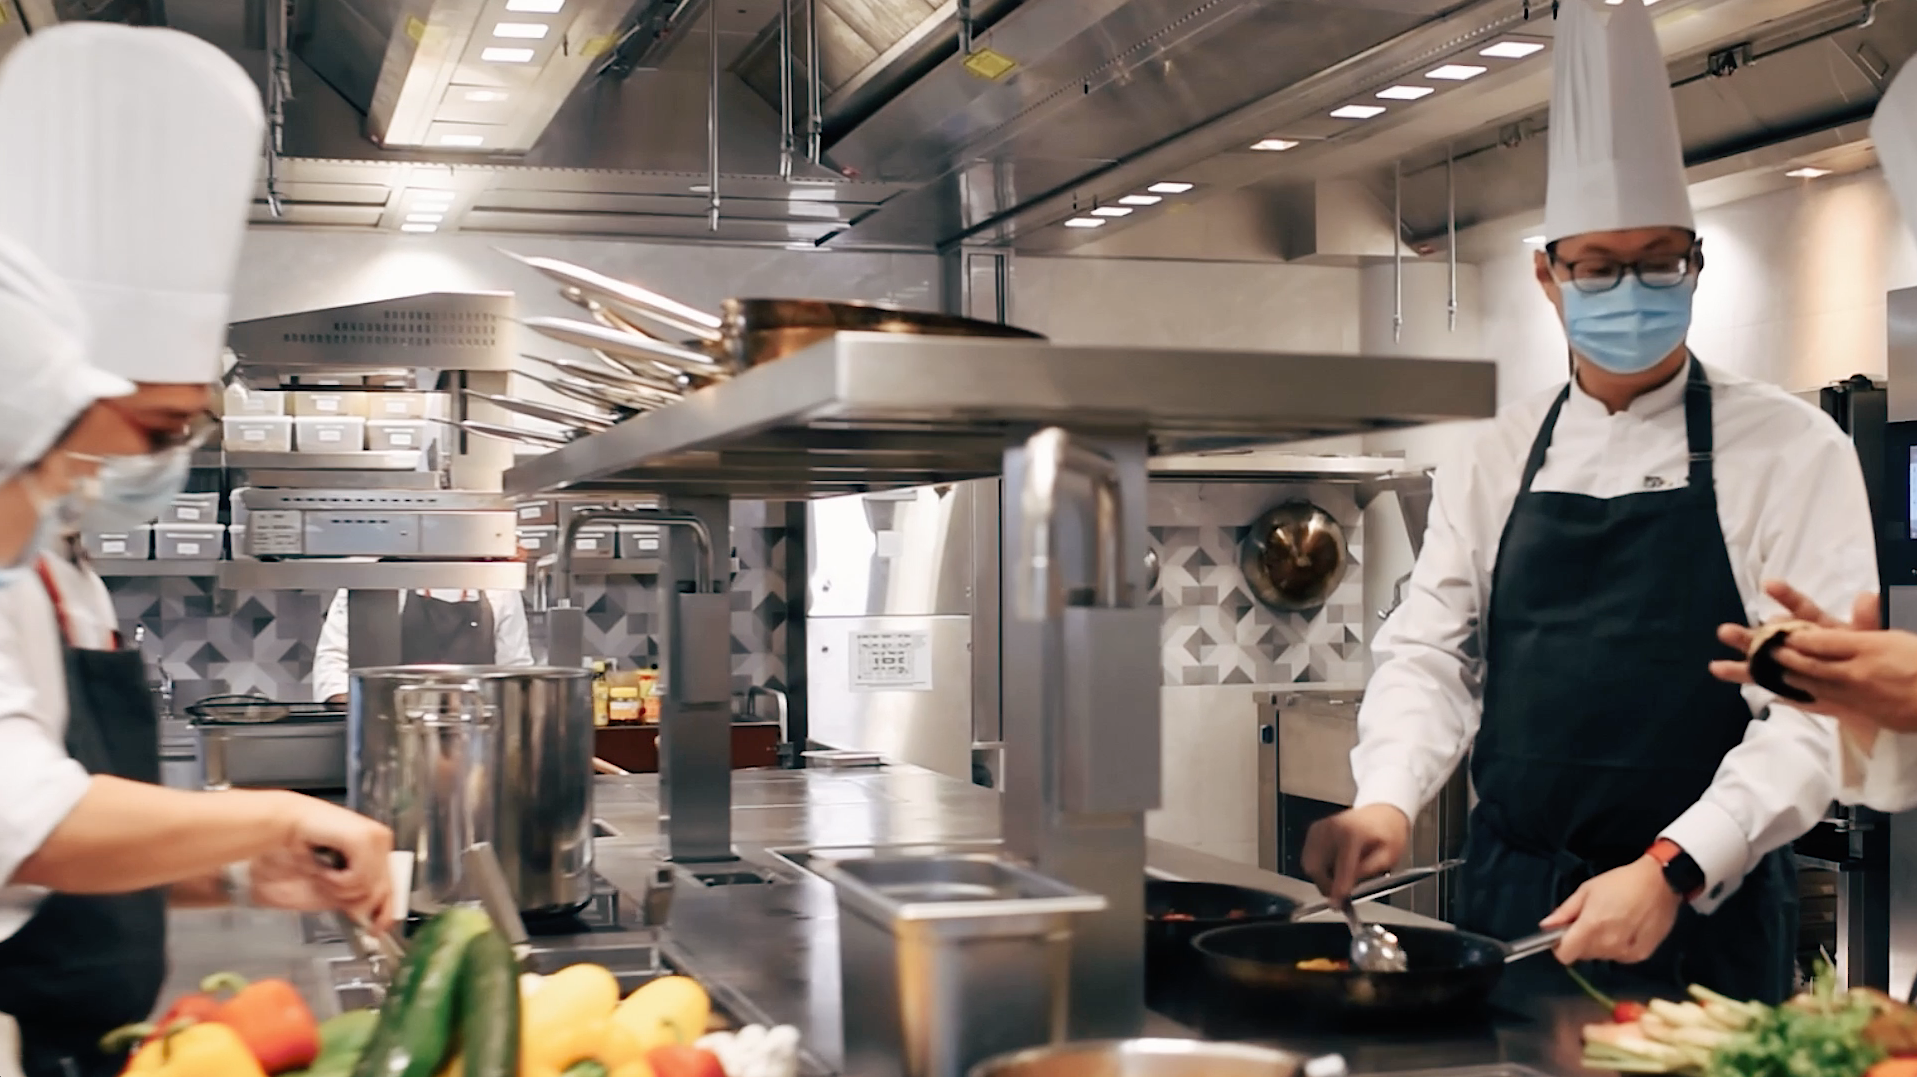 Singapore EXPO - MAX Atria has chosen Halton Solutions for the ventilation of their kitchen